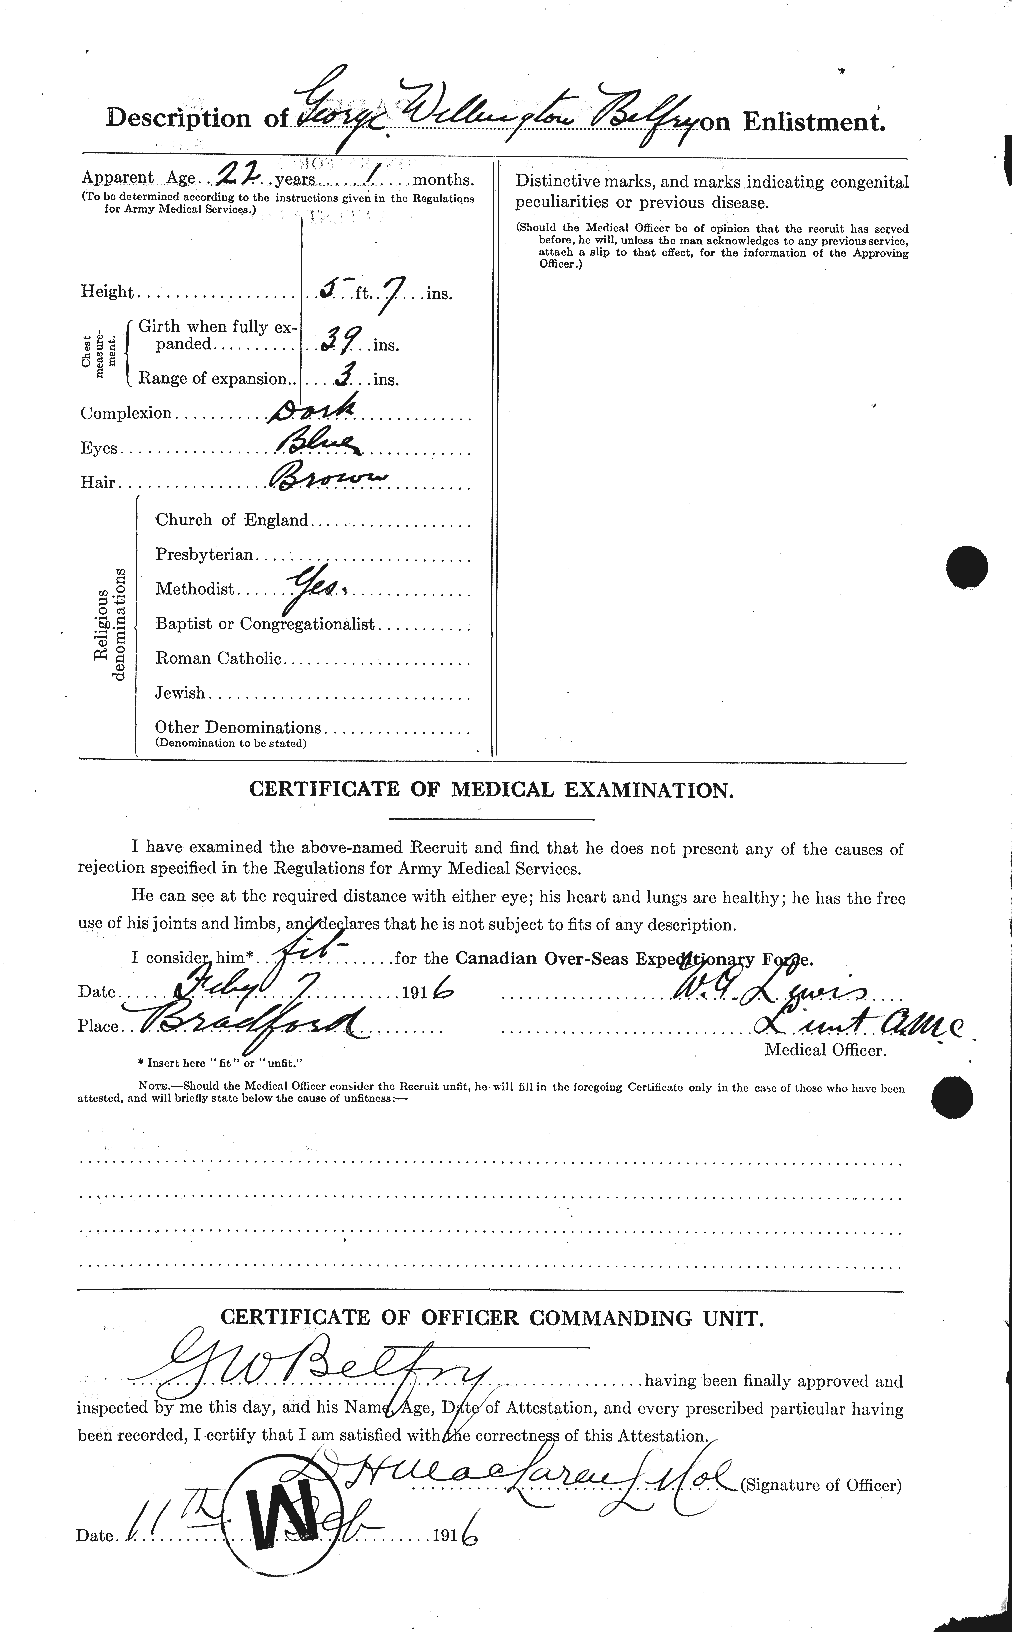 Dossiers du Personnel de la Première Guerre mondiale - CEC 232440b